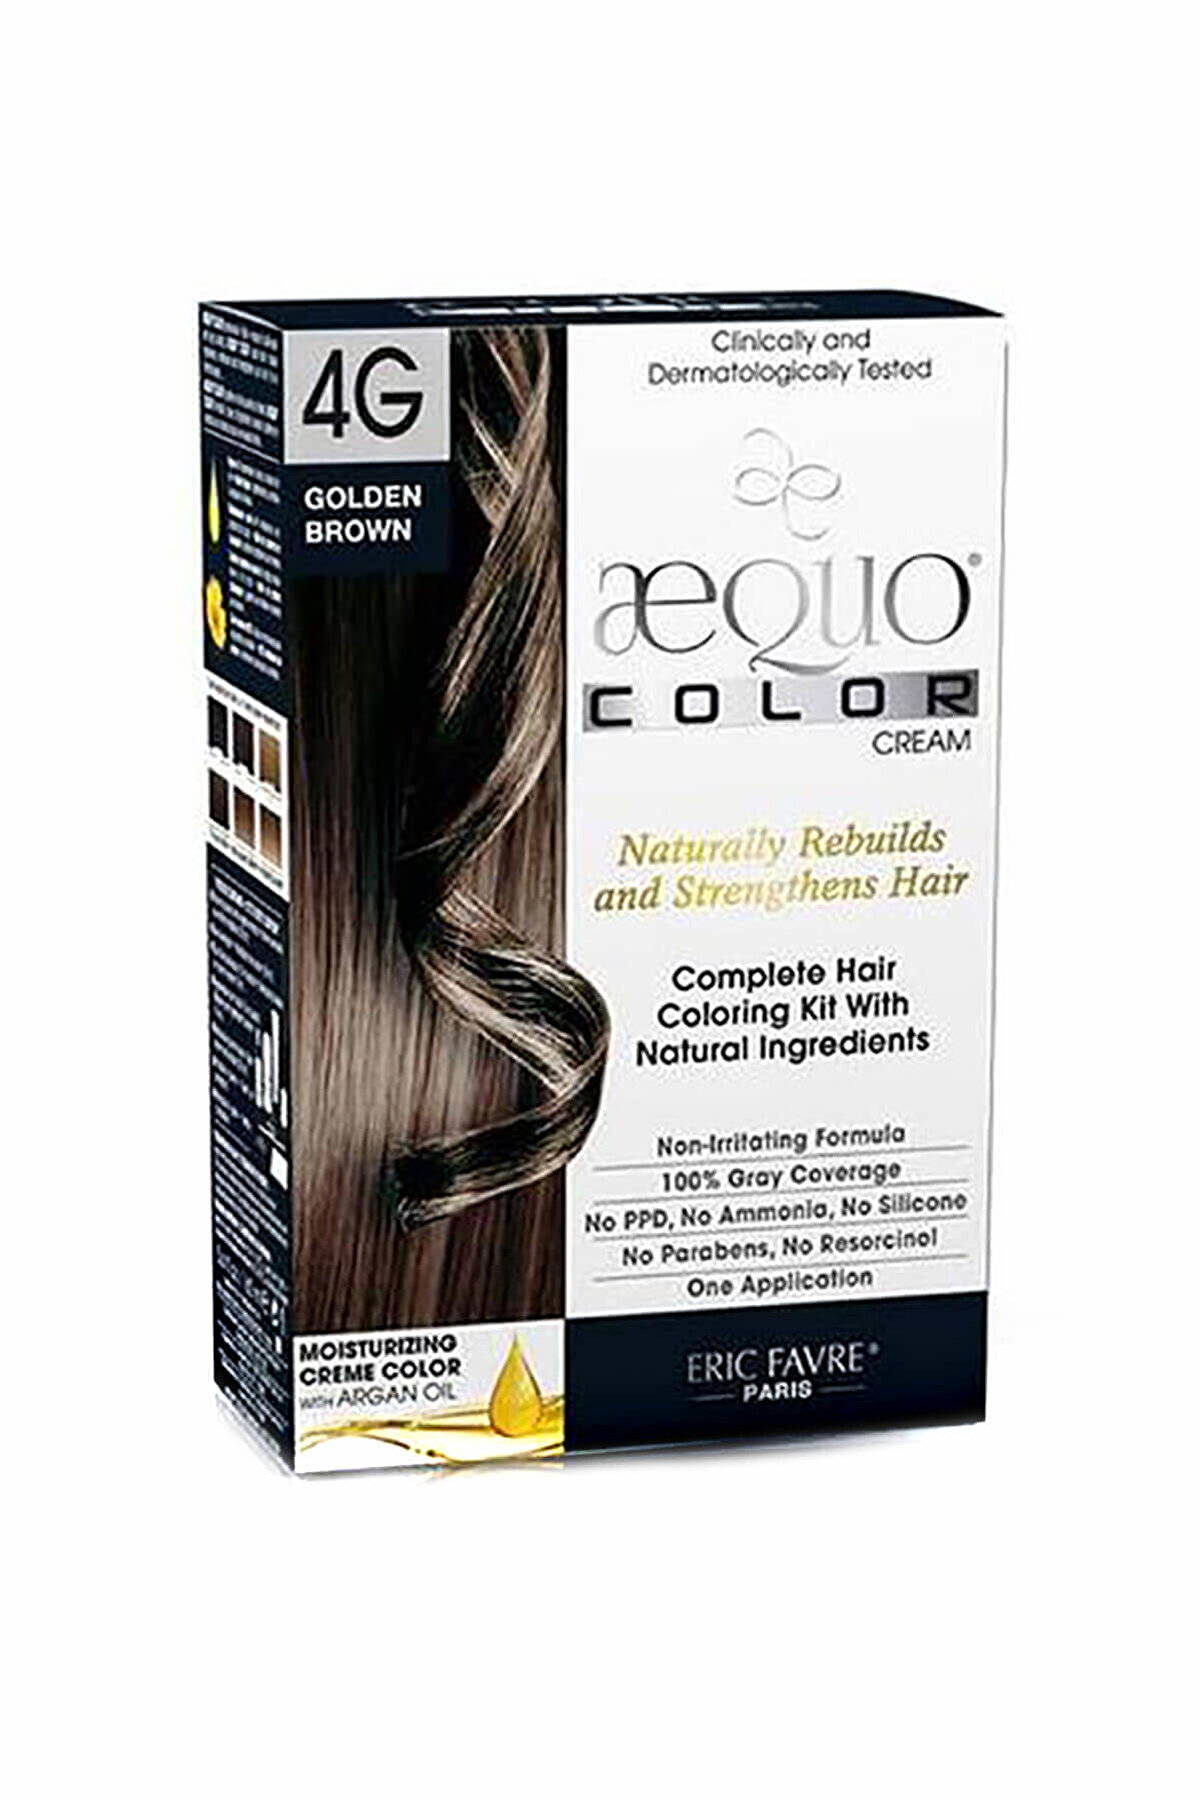 aequo color Organik Altın Kahverengi Saç Boyası - 4G Golden Brown 3525722013581